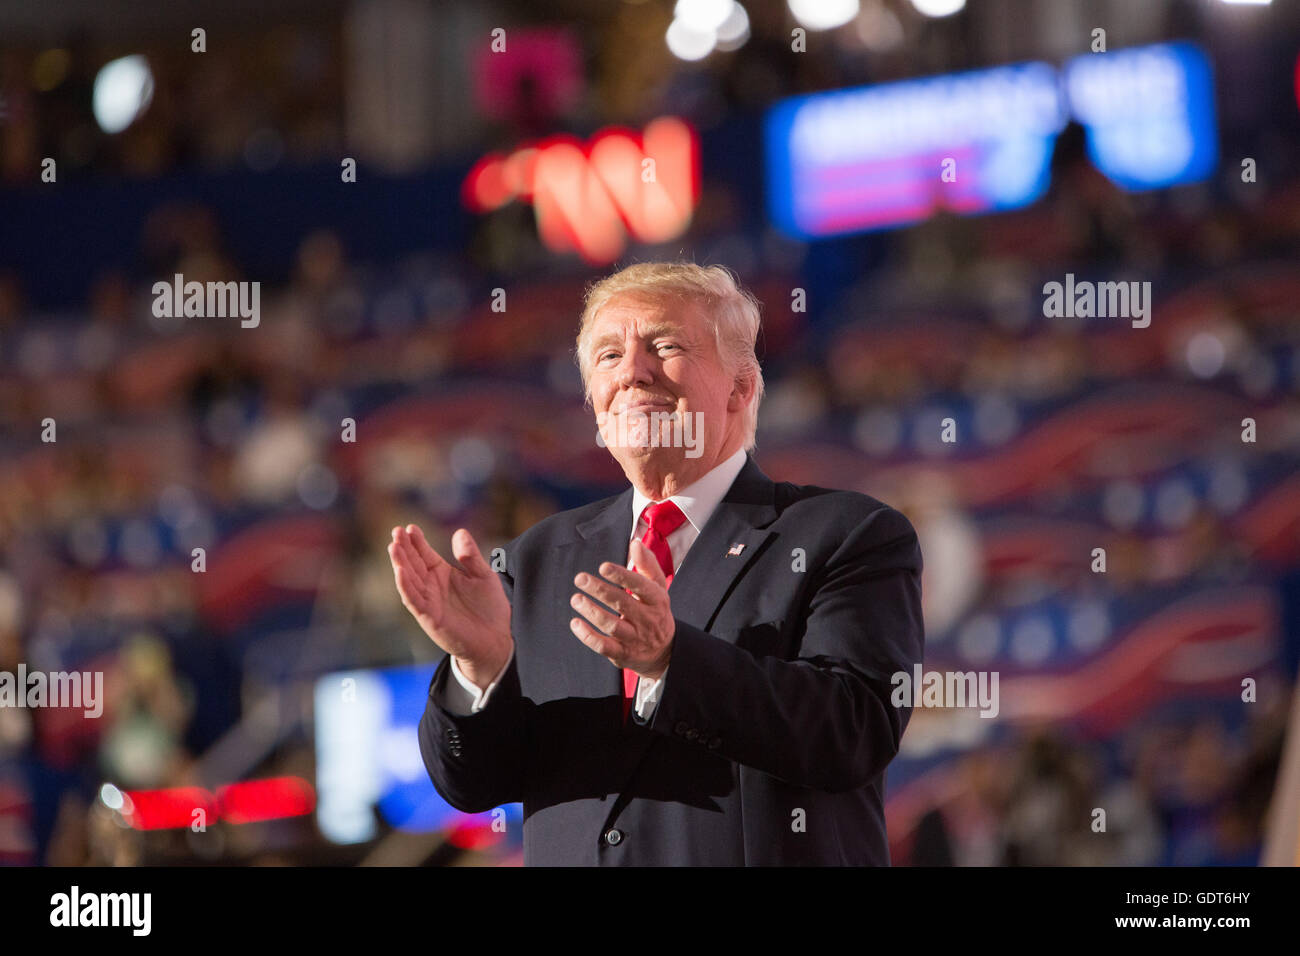 Cleveland, Ohio, USA; 21. Juli 2016: Donald J. Trump nimmt die Nominierung für das Amt des Präsidenten der Vereinigten Staaten auf dem Republican National Convention an. (Philip Scalia/Alamy Live News) Stockfoto